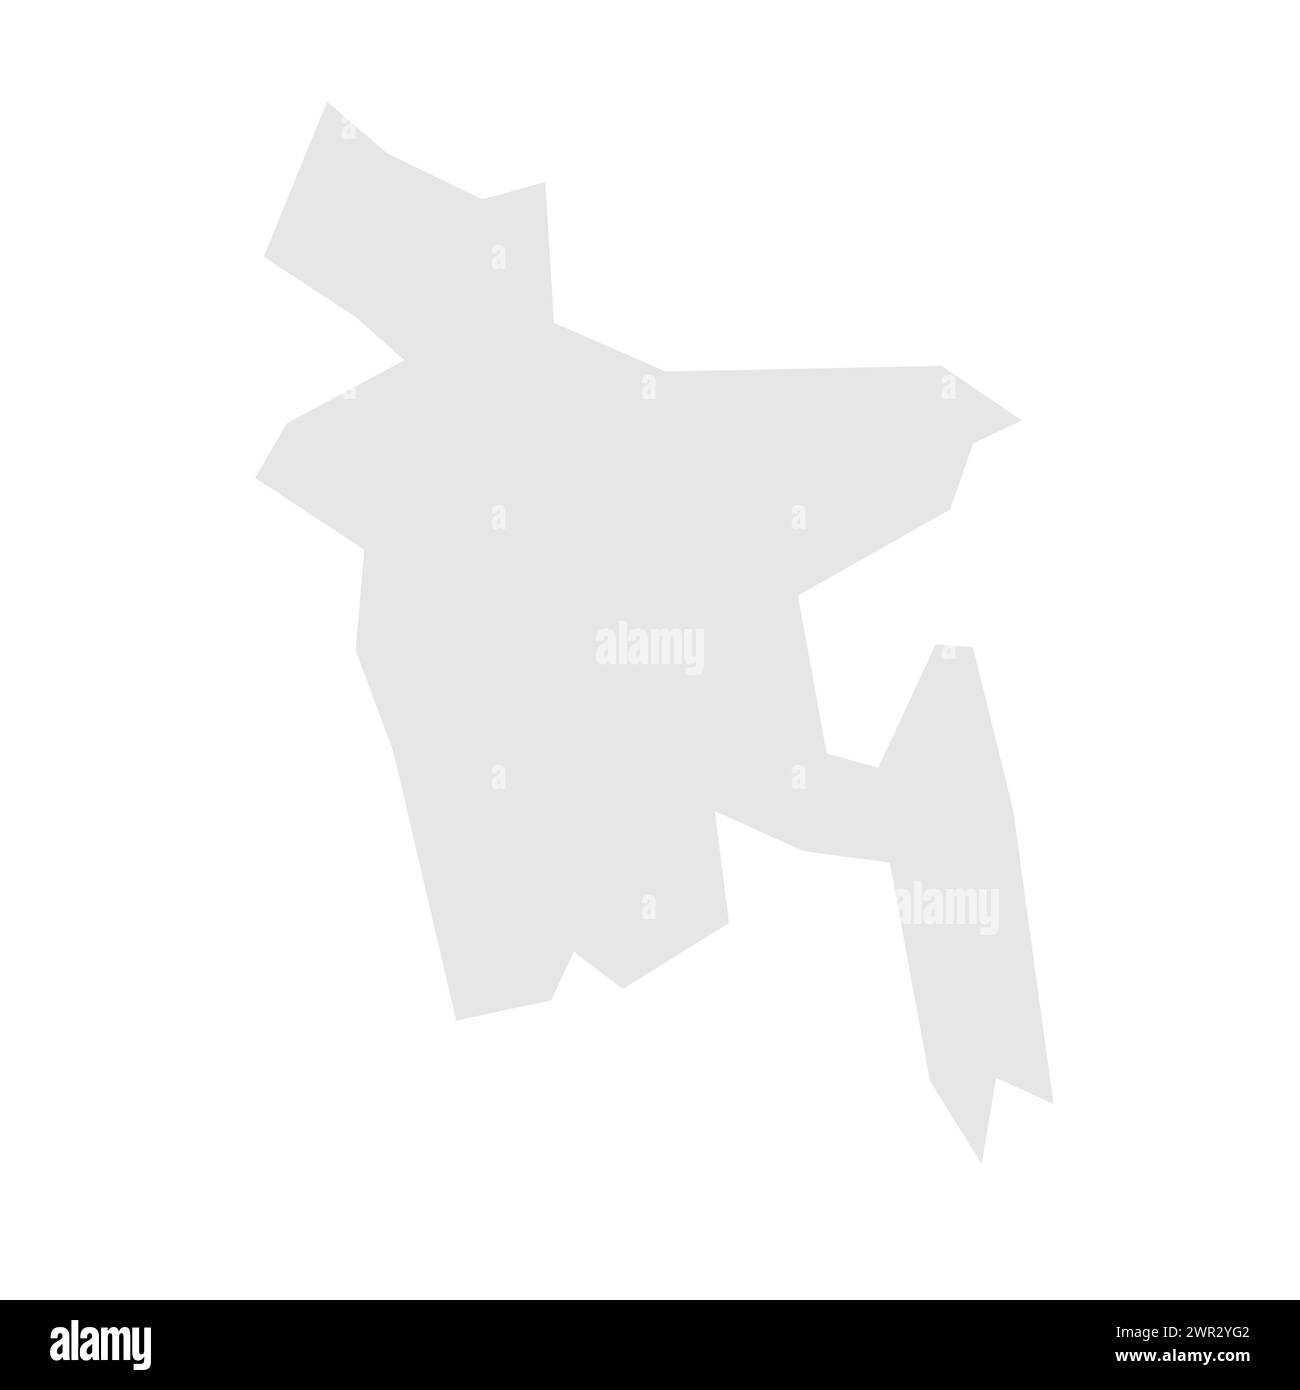 Carte simplifiée du Bangladesh. Silhouette gris clair avec des angles vifs isolés sur fond blanc. Icône vectorielle simple Illustration de Vecteur